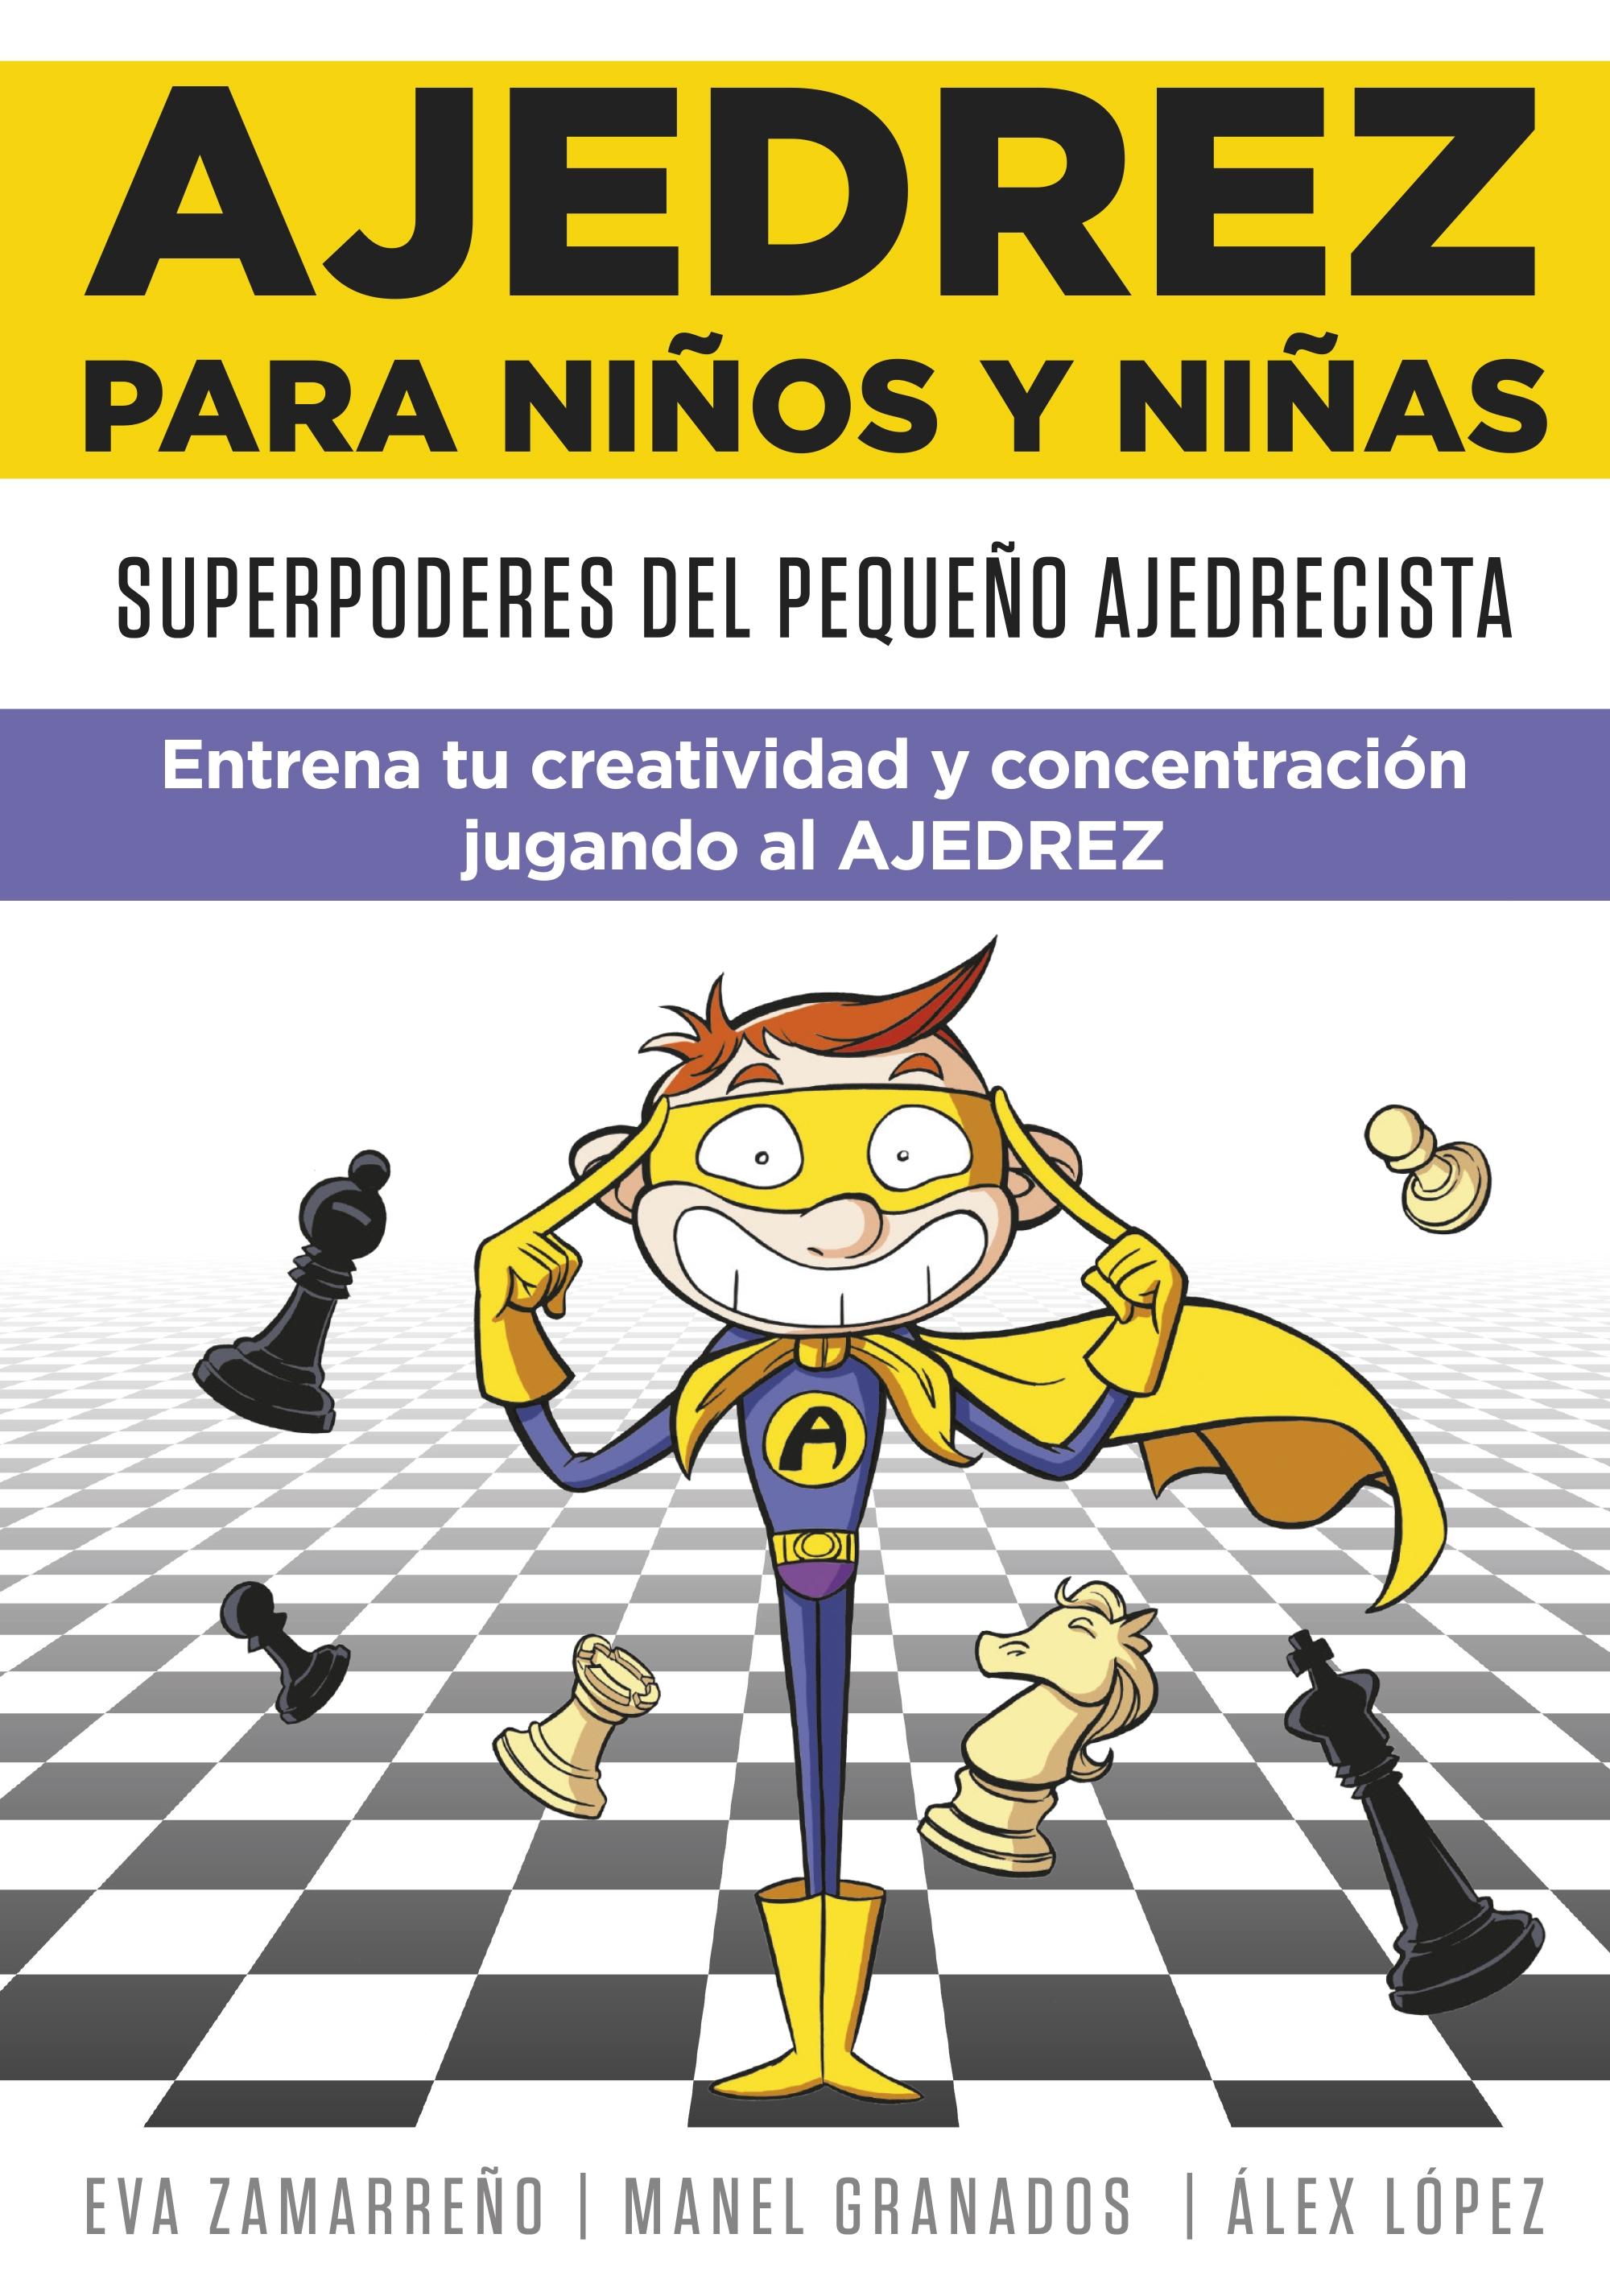 Ajedrez para niños y niñas "Superpoderes del pequeño ajedrecista. Entrena tu creatividad y concentra"